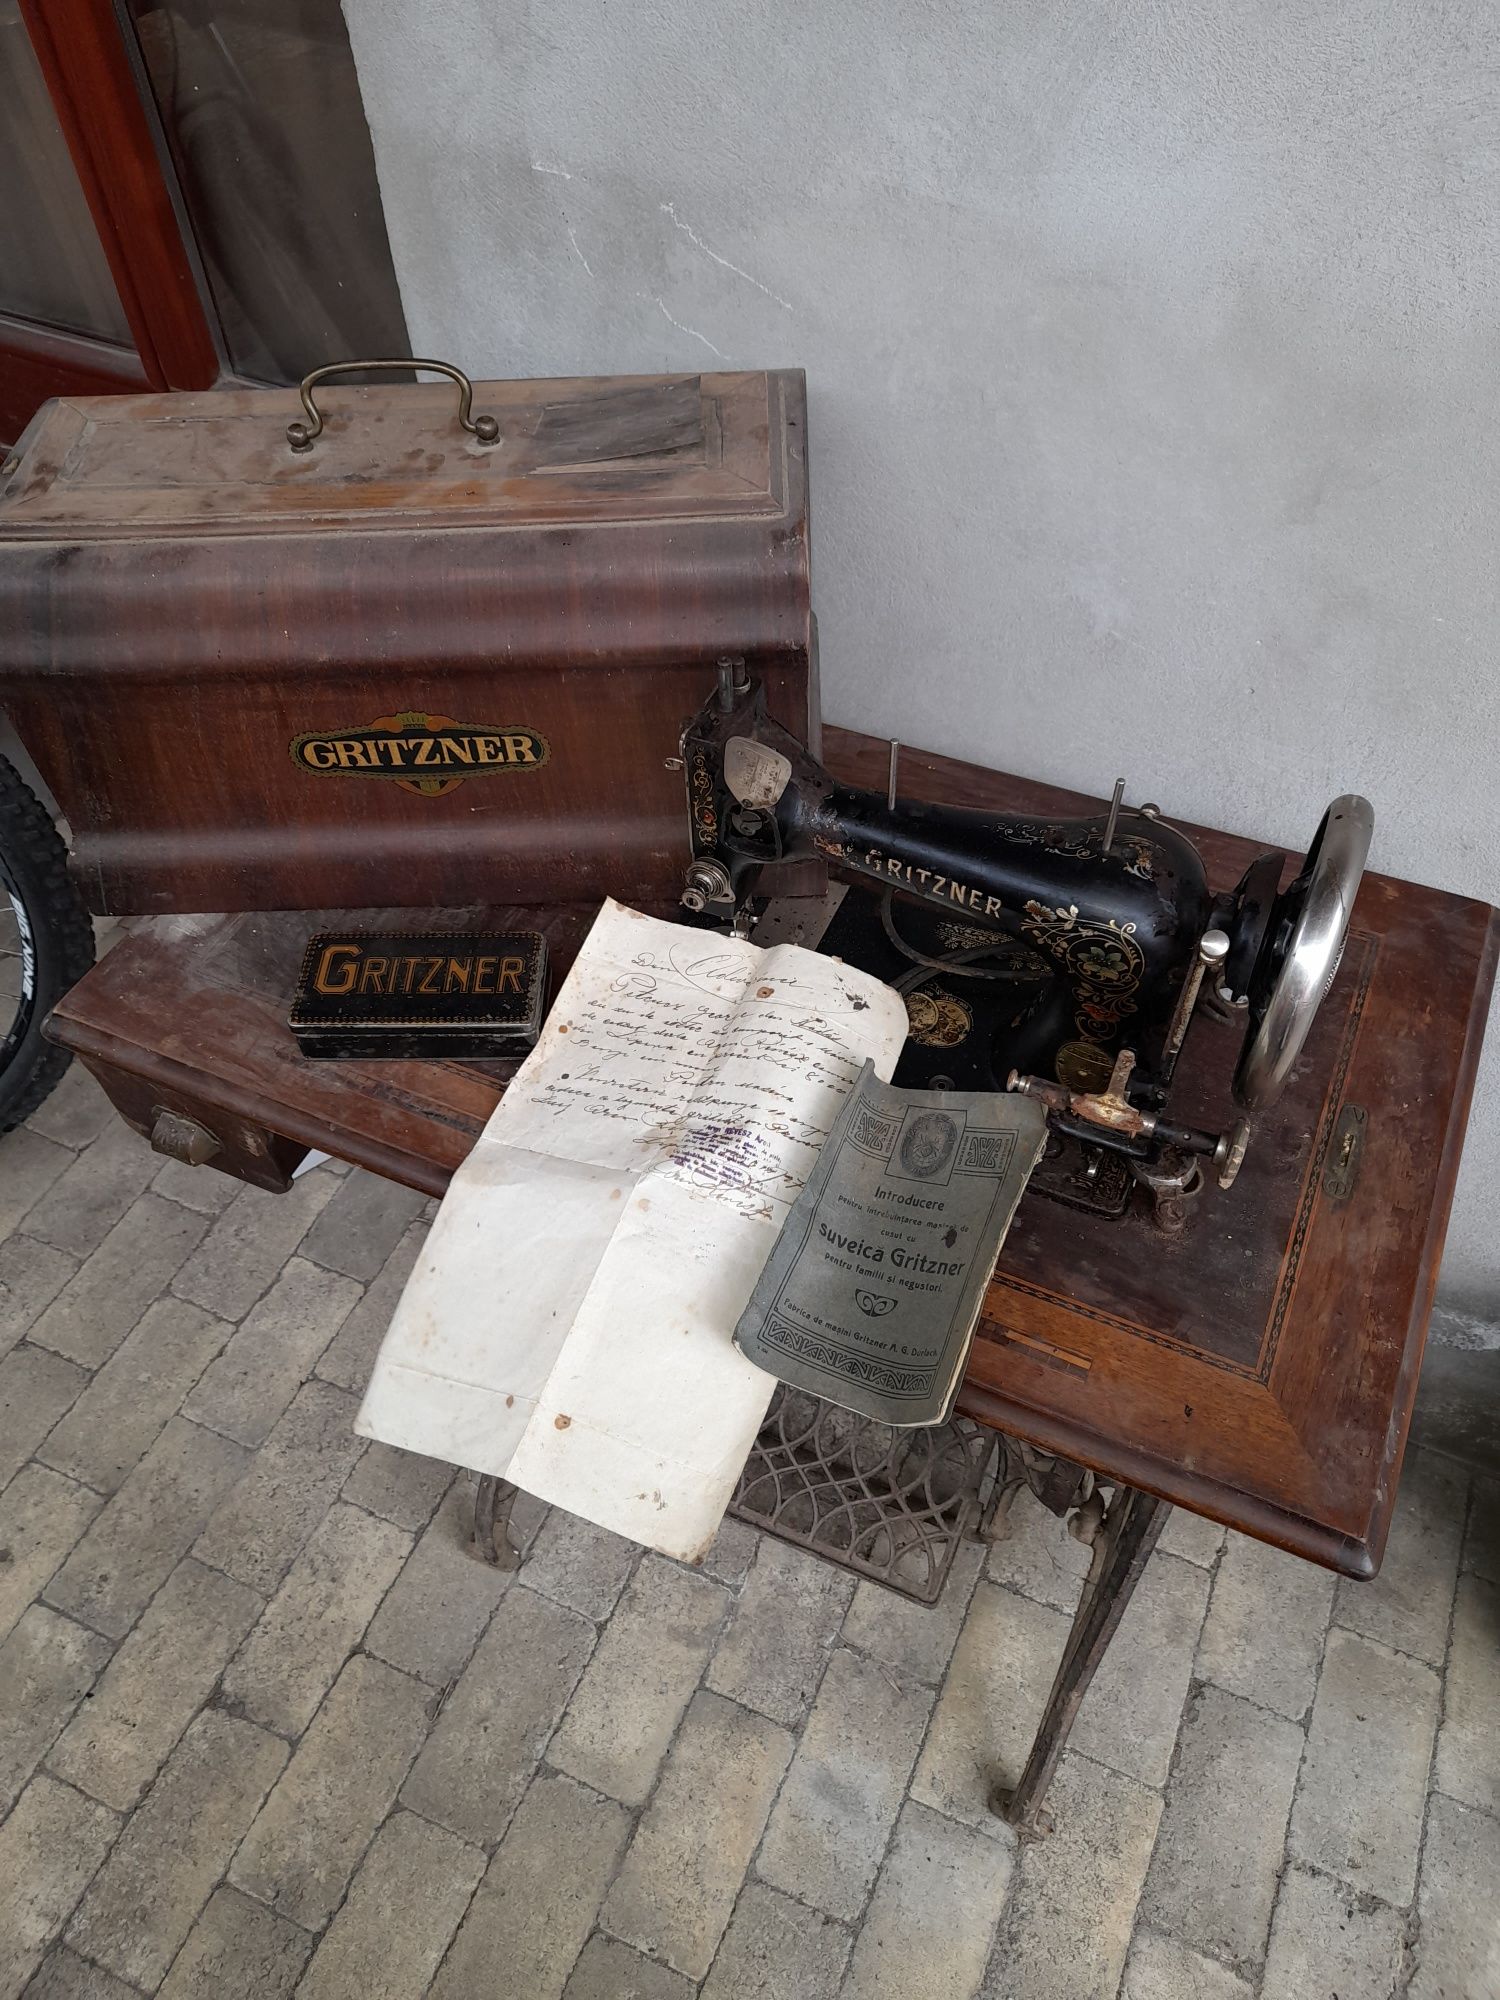 Mașină de cusut Gritzner Durlach foarte veche